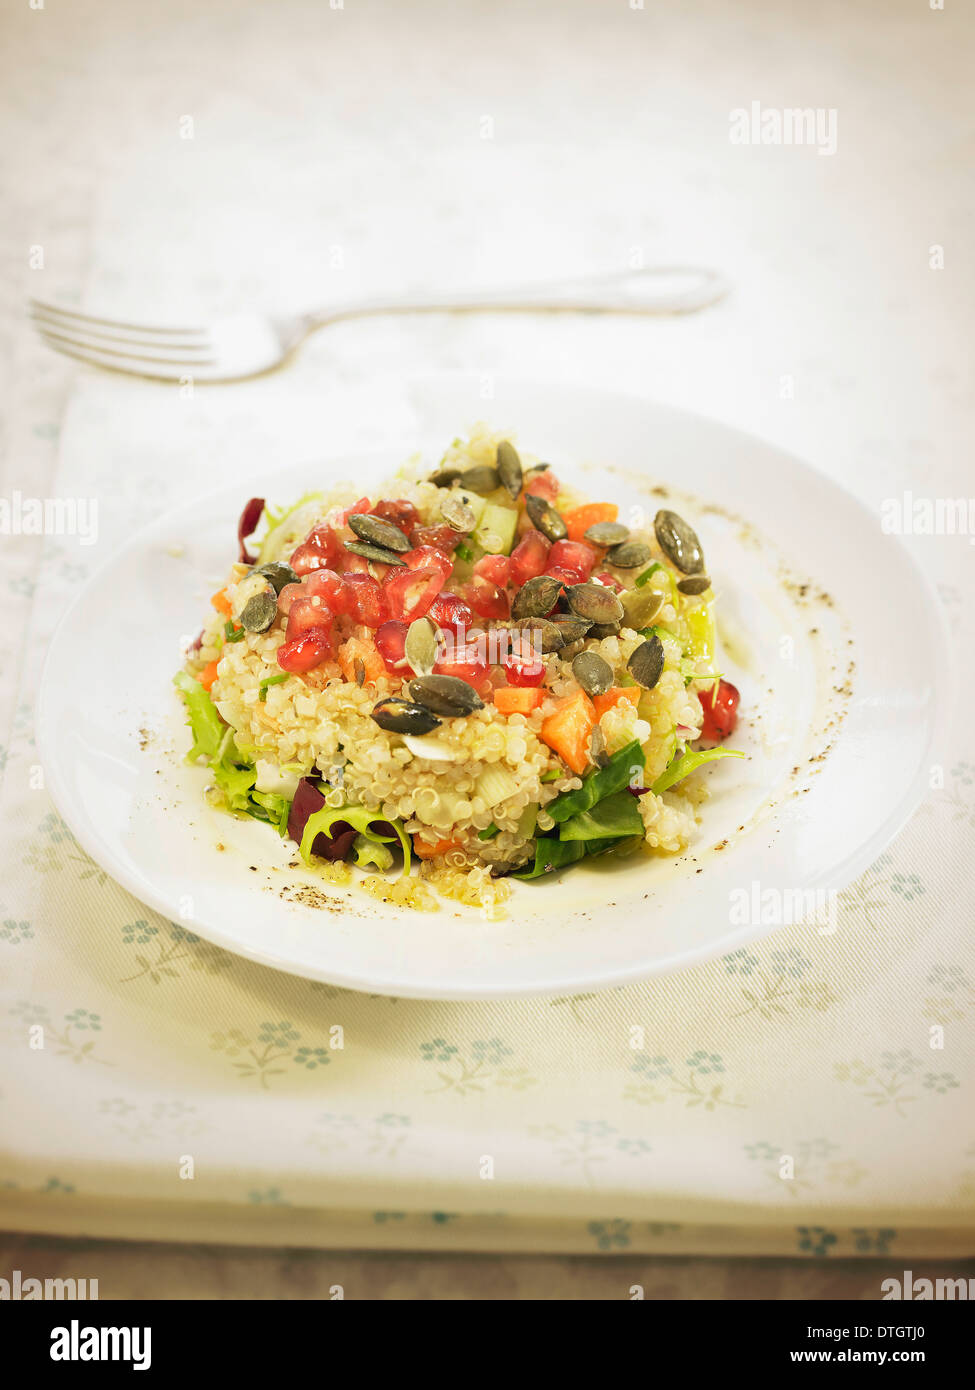 Le quinoa, carotte et graines de courge,salade de grenade Banque D'Images